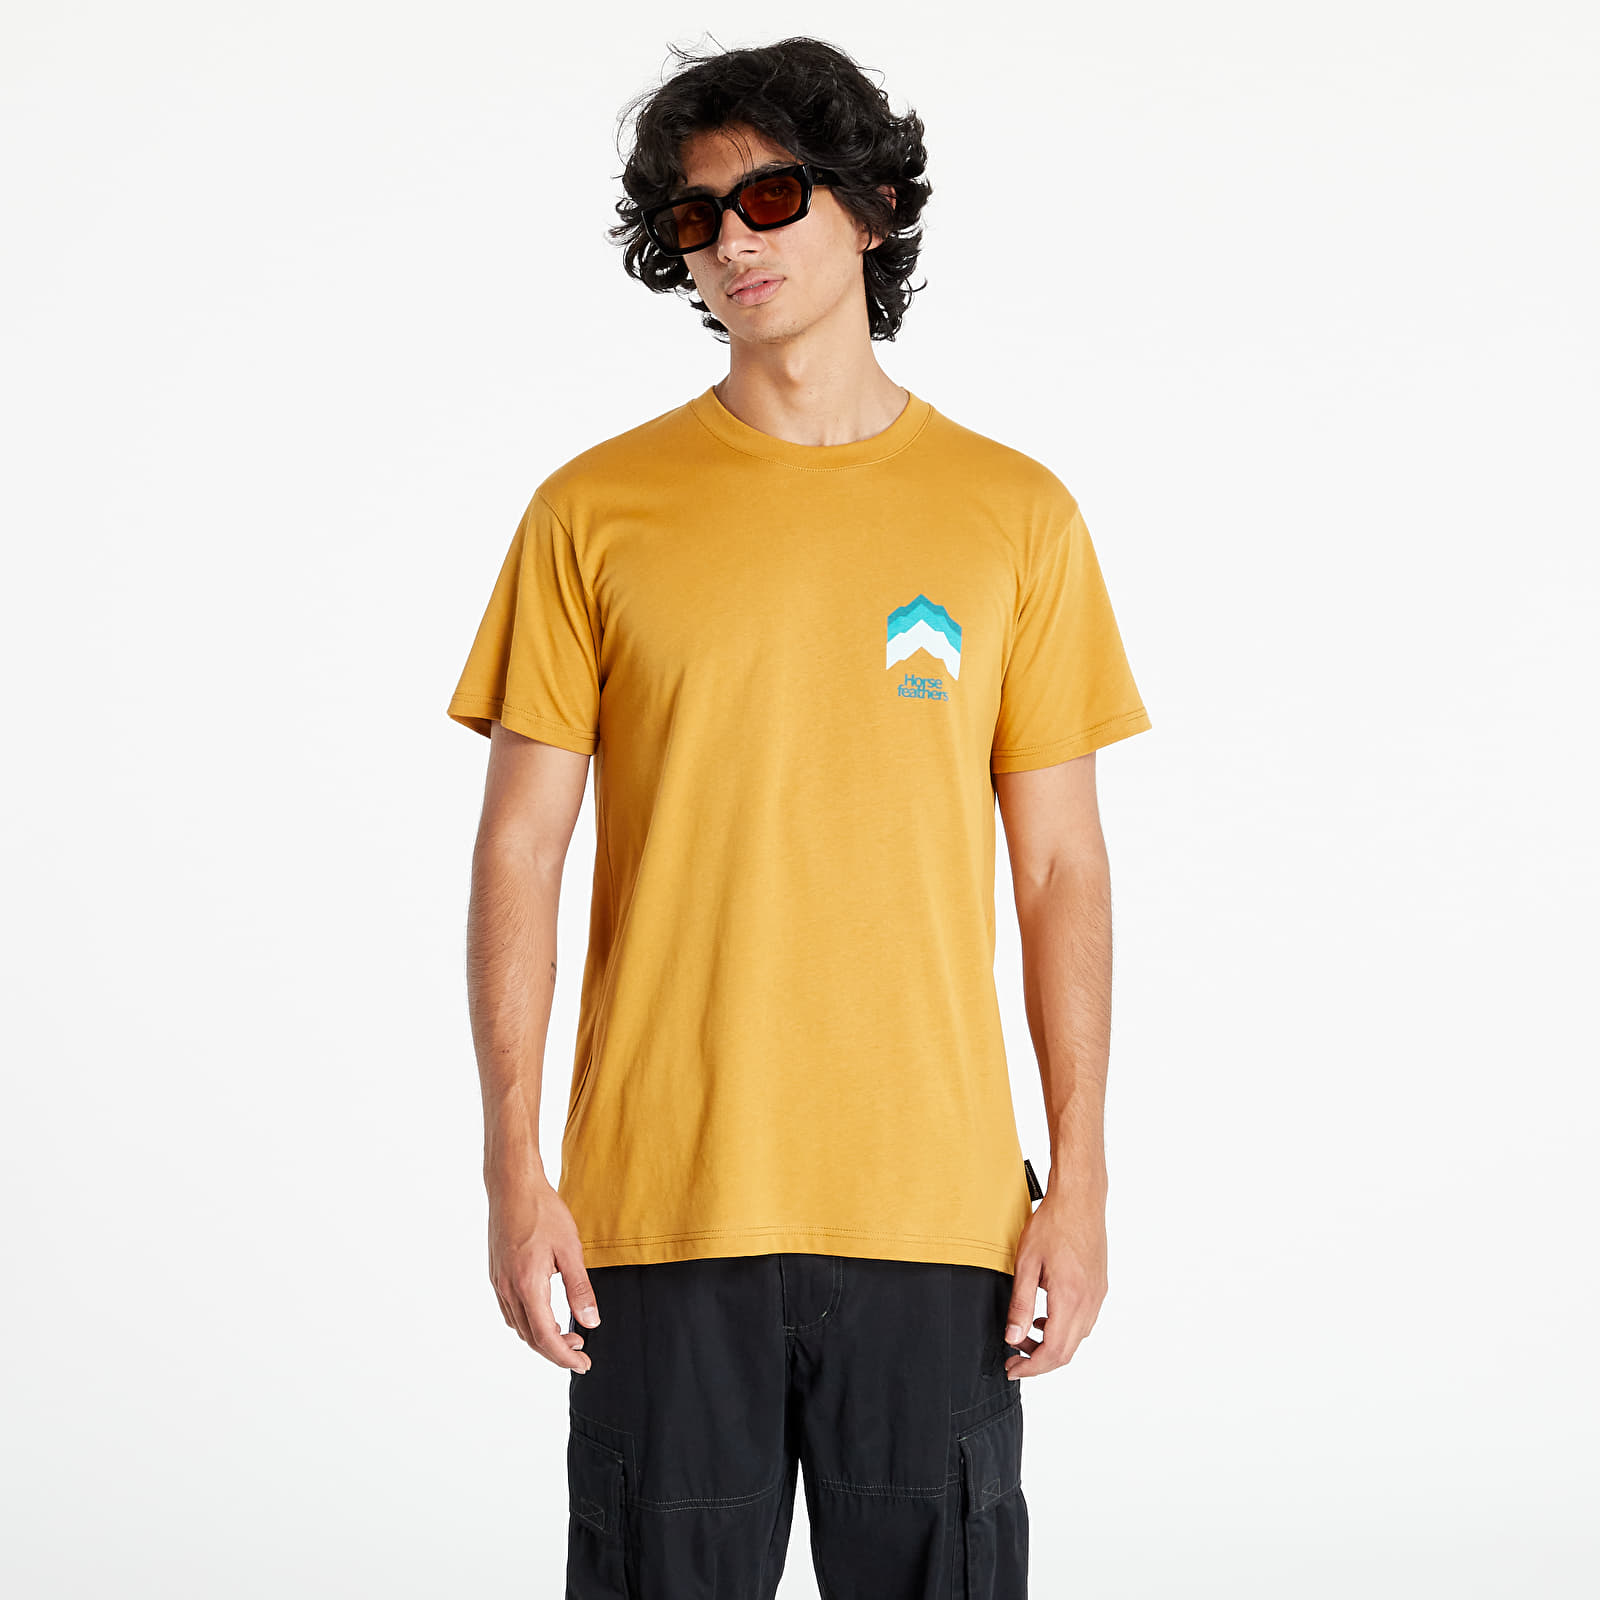  Μπλούζες Horsefeathers Horizon T-Shirt Spruce Yellow